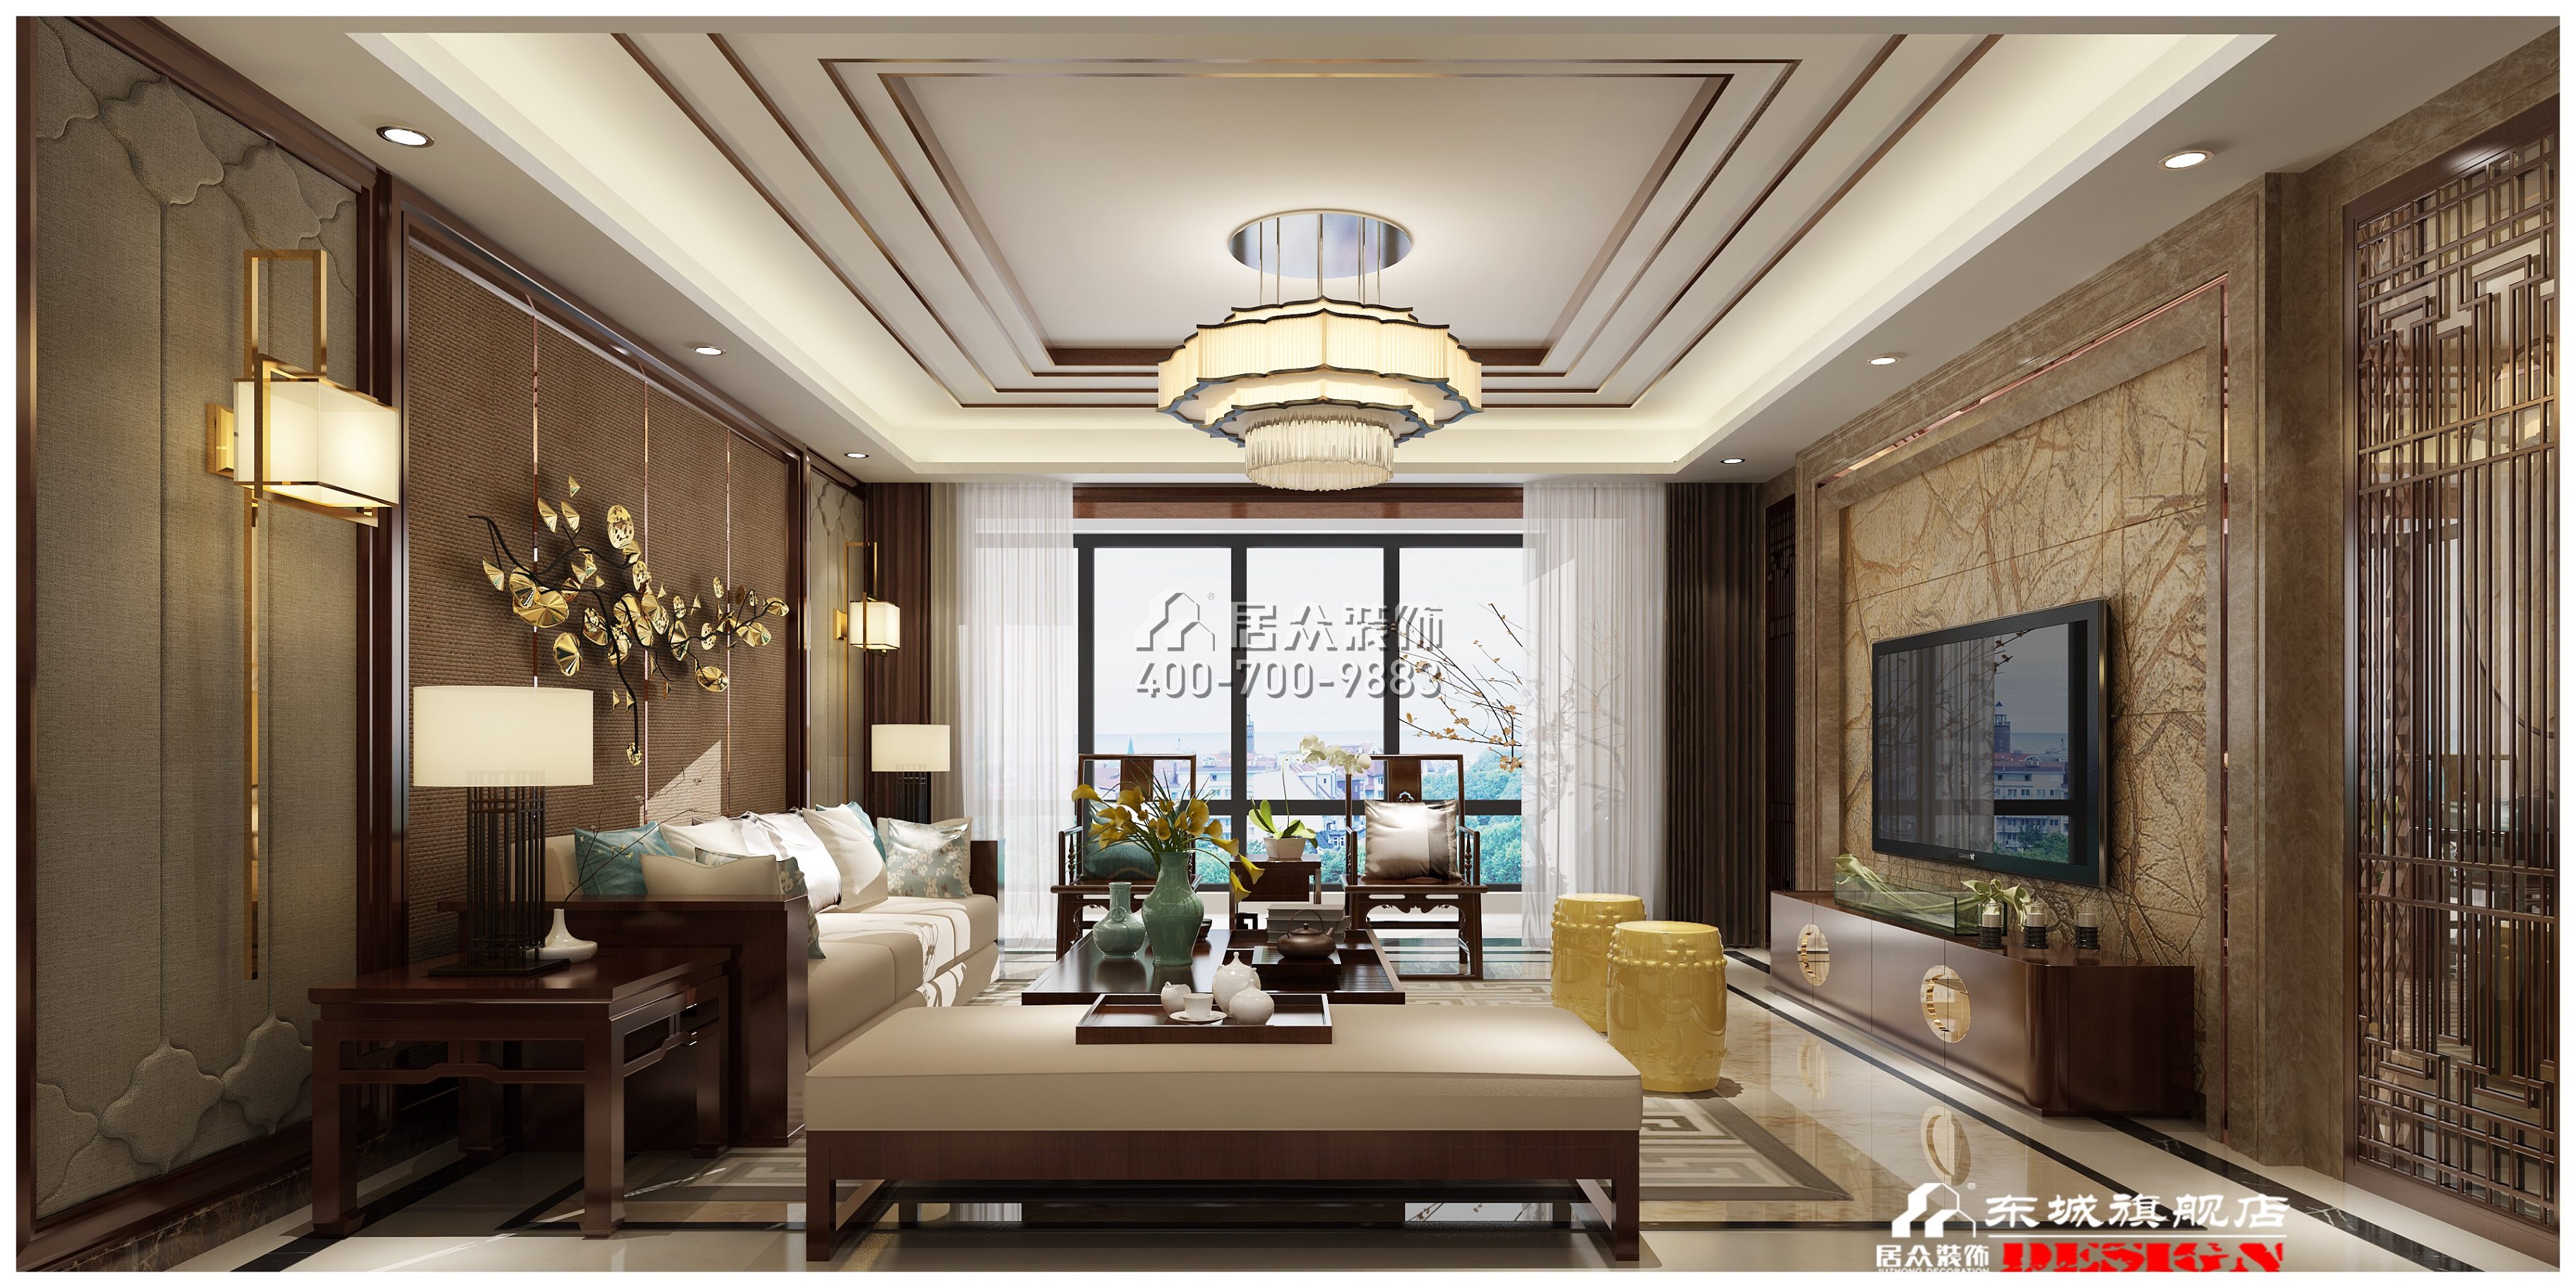 藏龙230平方米中式风格平层户型客厅装修效果图